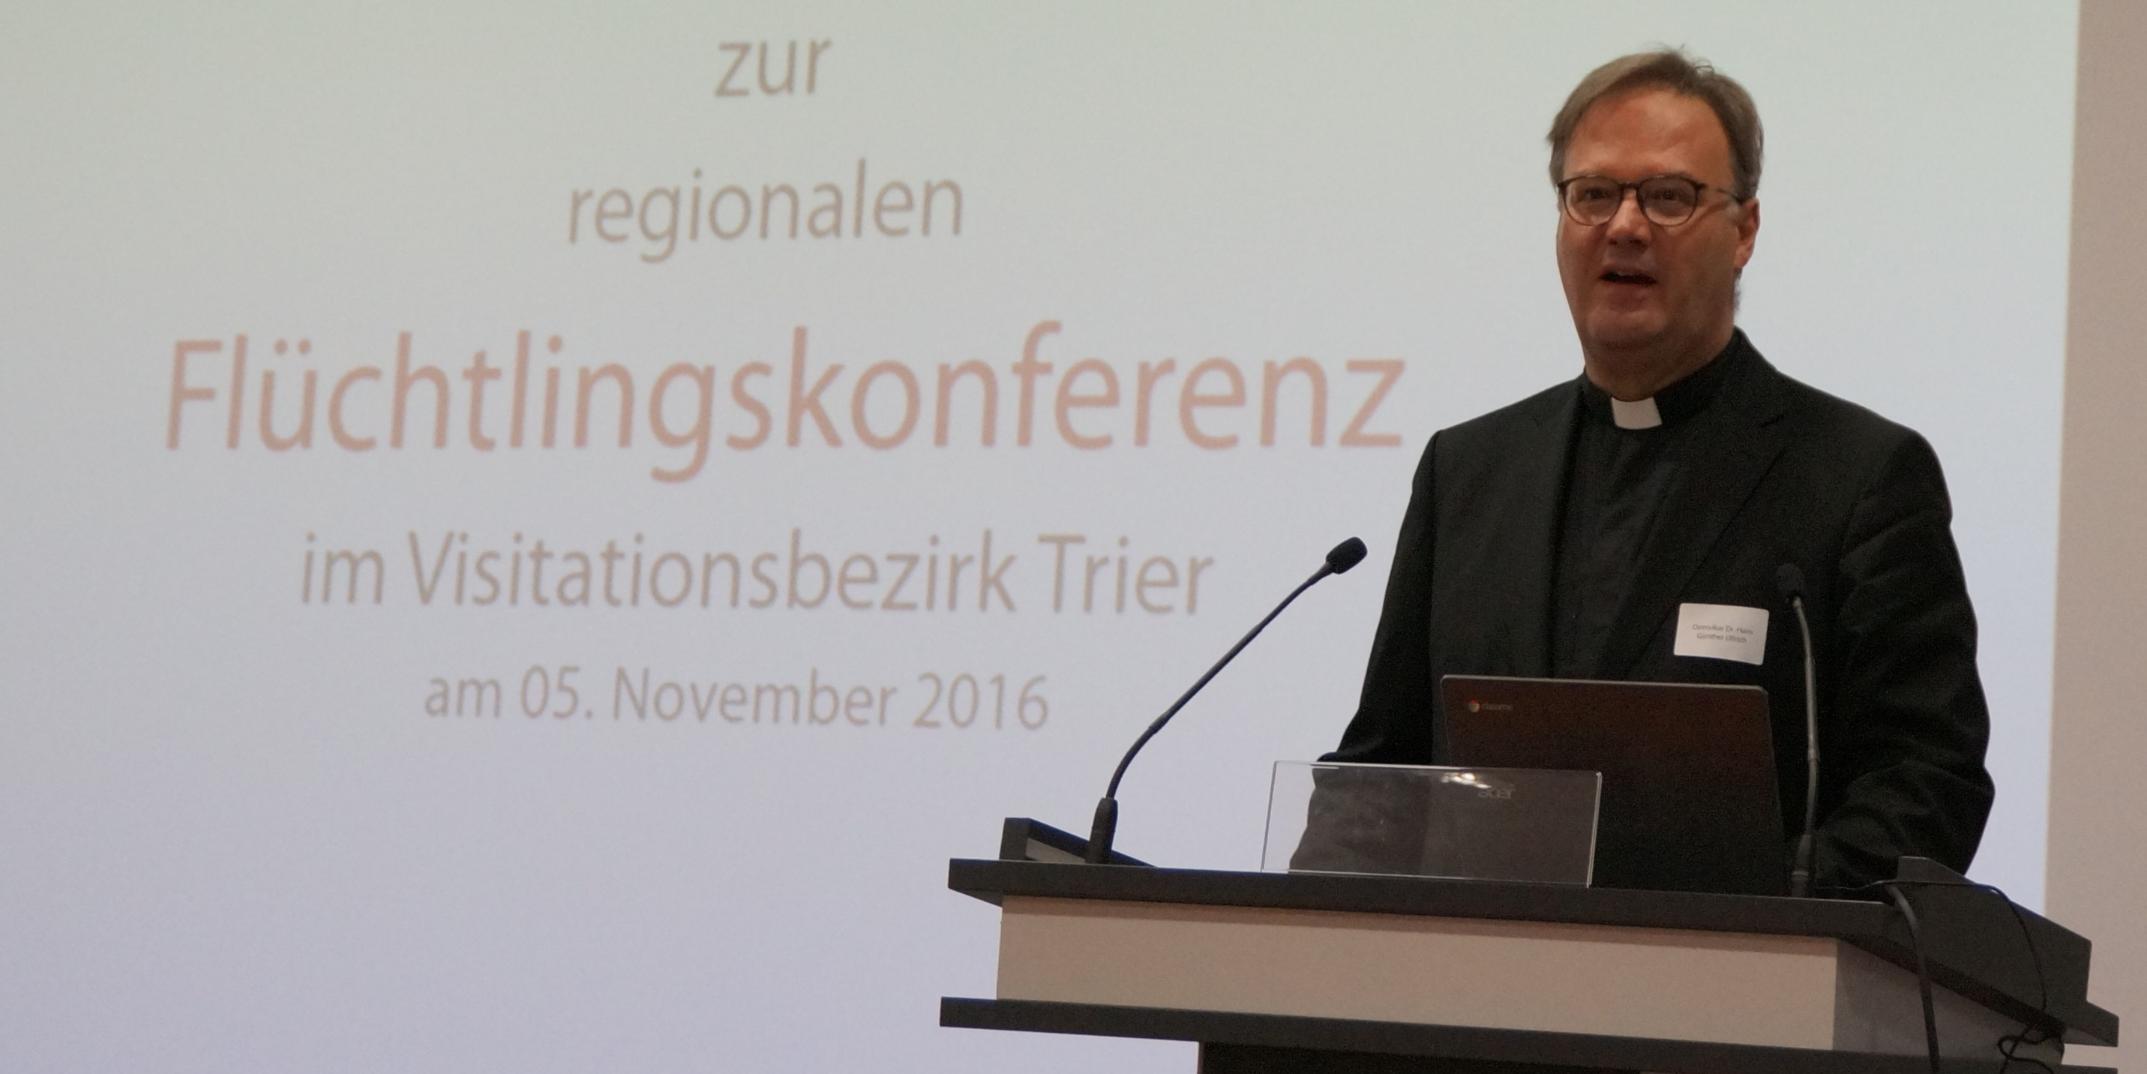 Dr. Hans Günther Ullrich, Leiter der Abteilung Ehrenamt, Bildung und Gesellschaft im Generalvikariat, eröffnet die erste regionale Flüchtlingskonferenz in Trier.